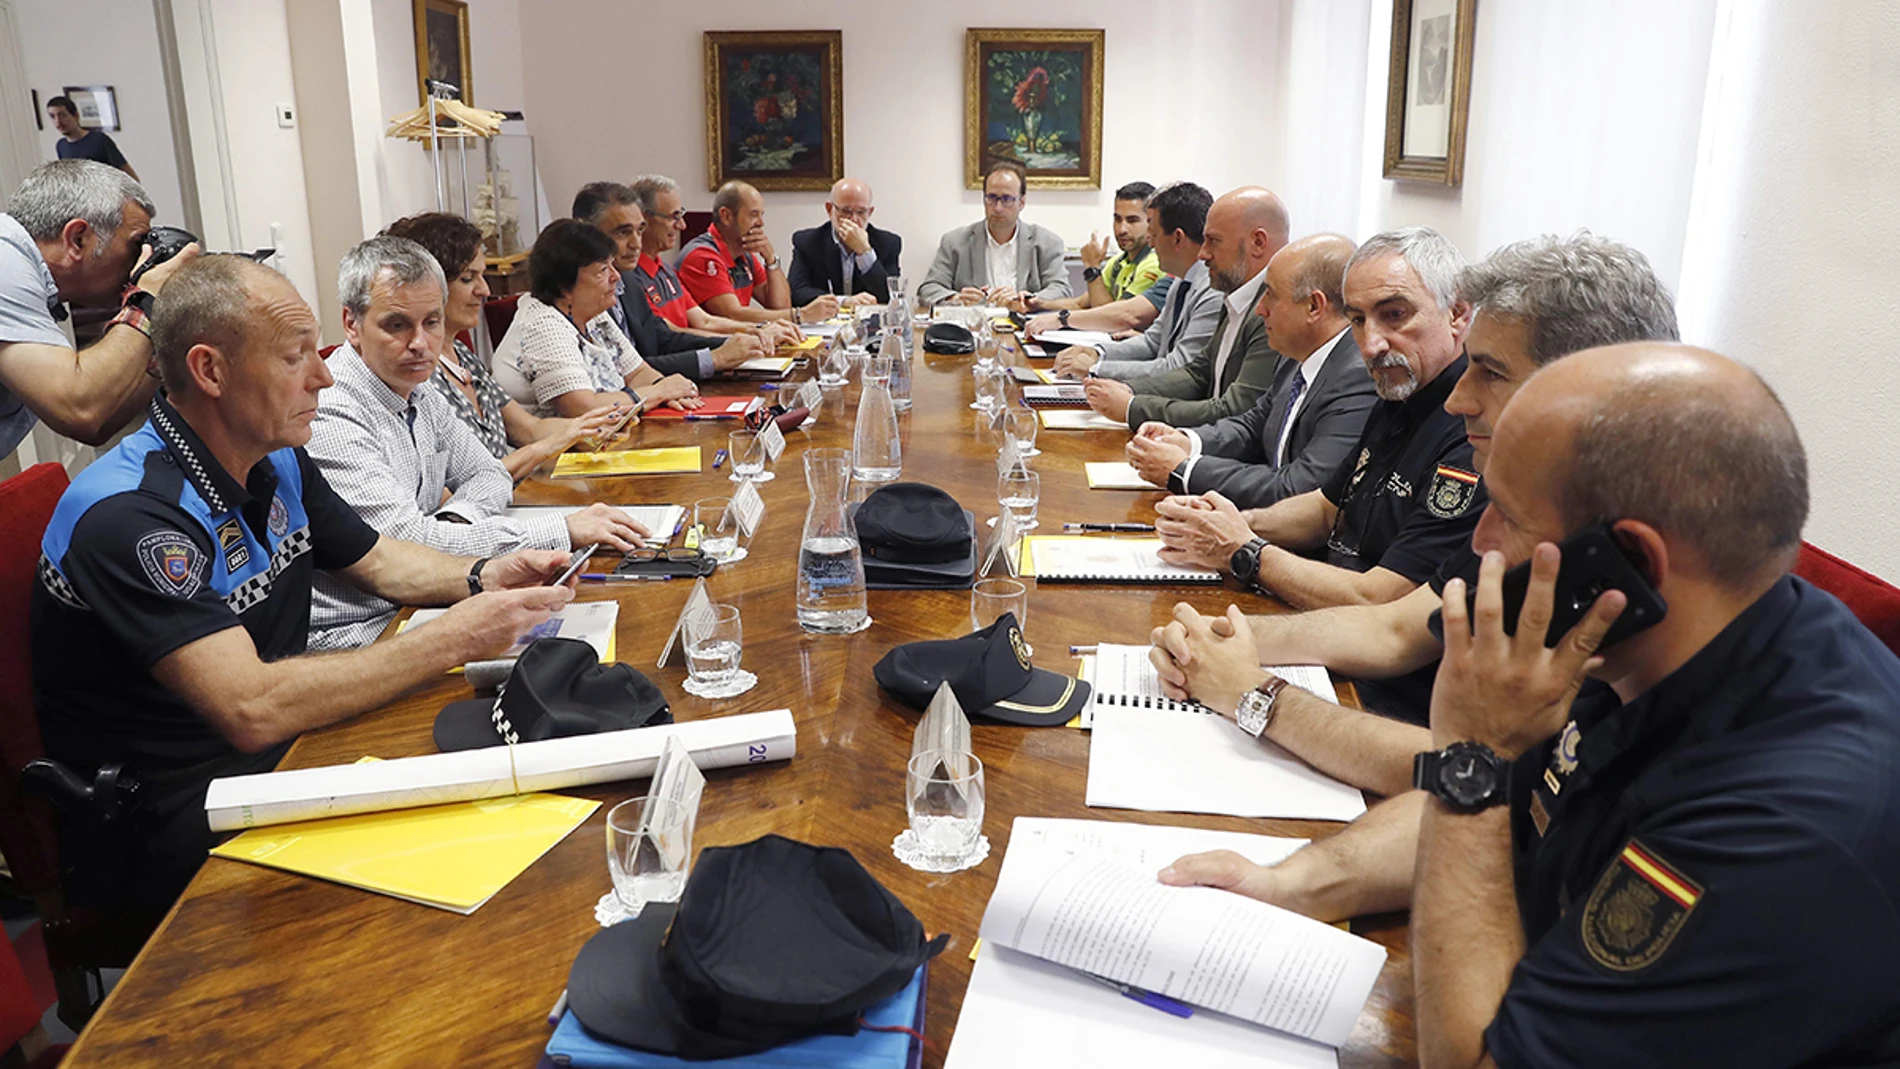 Imagen de la reunión por el dispositivo de seguridad en San Fermín